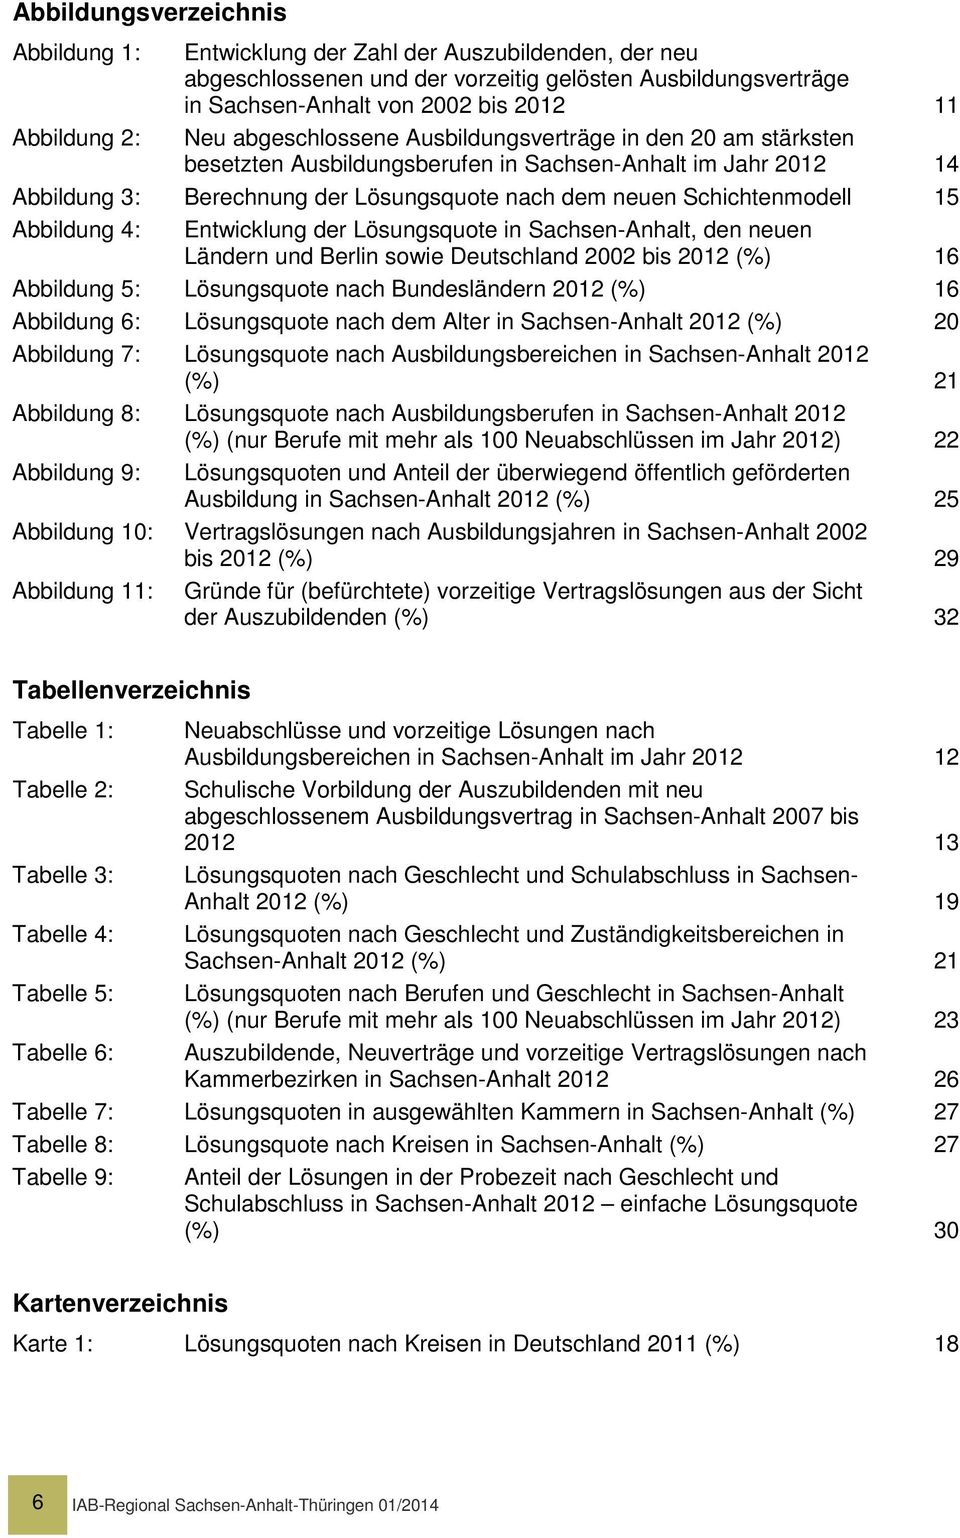 Abbildung 4: Entwicklung der Lösungsquote in Sachsen-Anhalt, den neuen Ländern und Berlin sowie Deutschland 2002 bis 2012 (%) 16 Abbildung 5: Lösungsquote nach Bundesländern 2012 (%) 16 Abbildung 6: